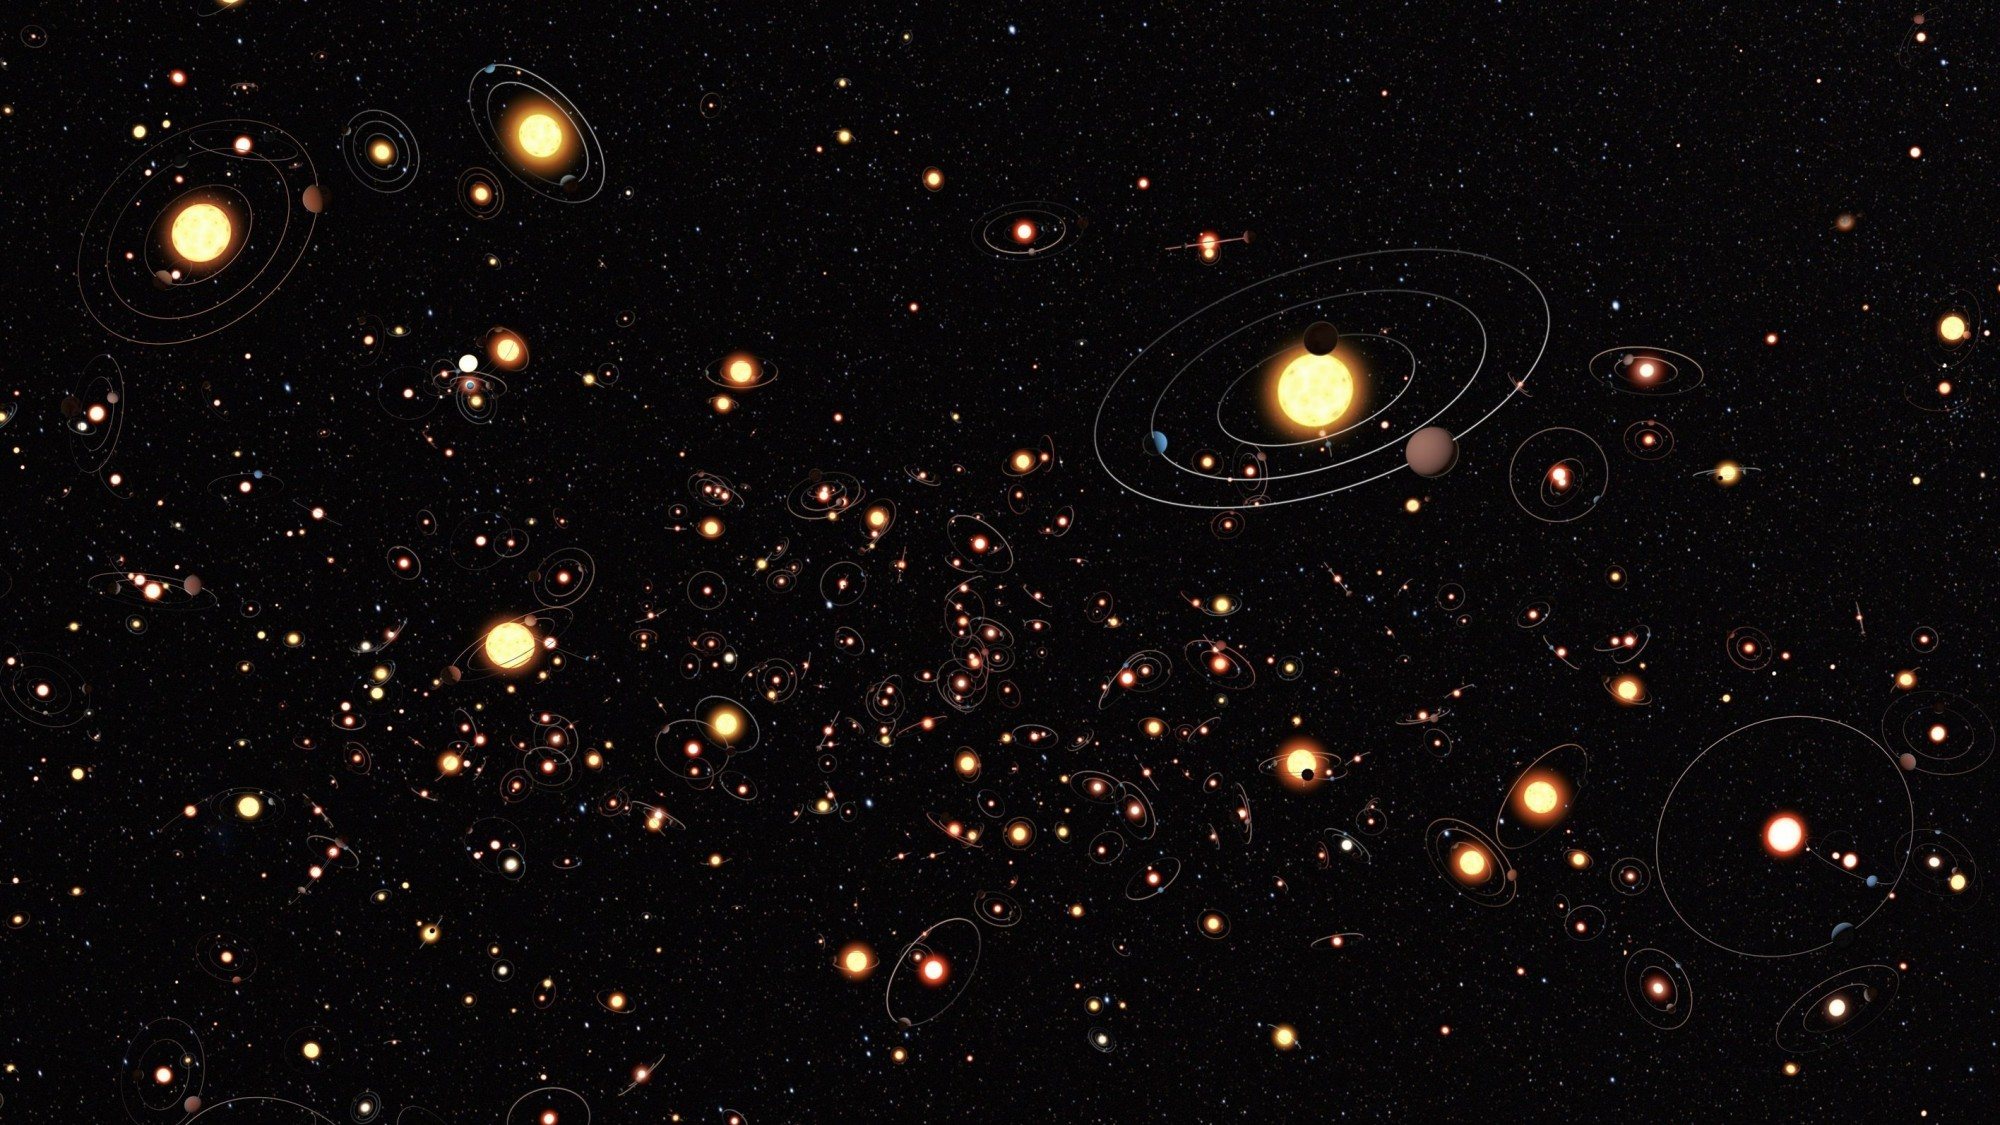 Na galáxia “Nuvem” a densidade de estrelas varia muito pouco em toda a sua extensão